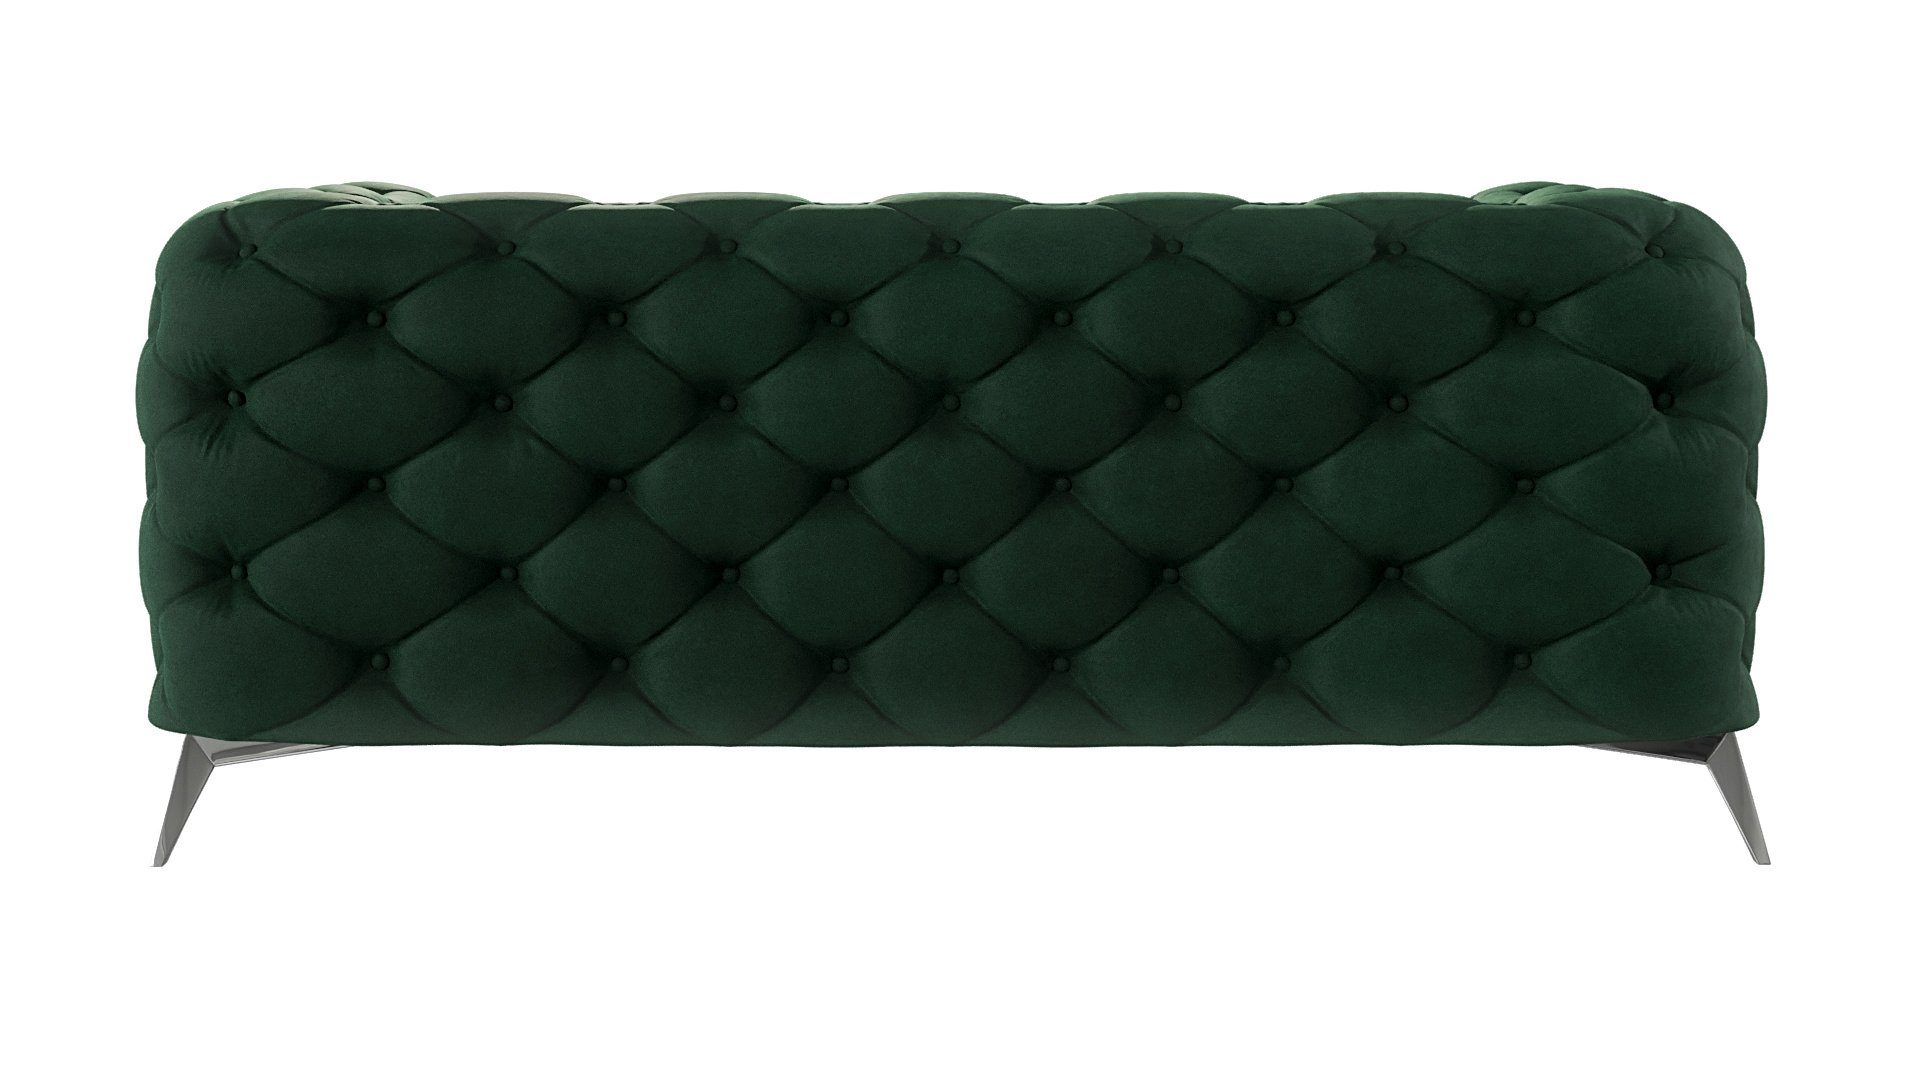 Metall Möbel S-Style Flasche mit Grün Füßen, Silber 2-Sitzer Wellenfederung Kalina mit Chesterfield Sofa